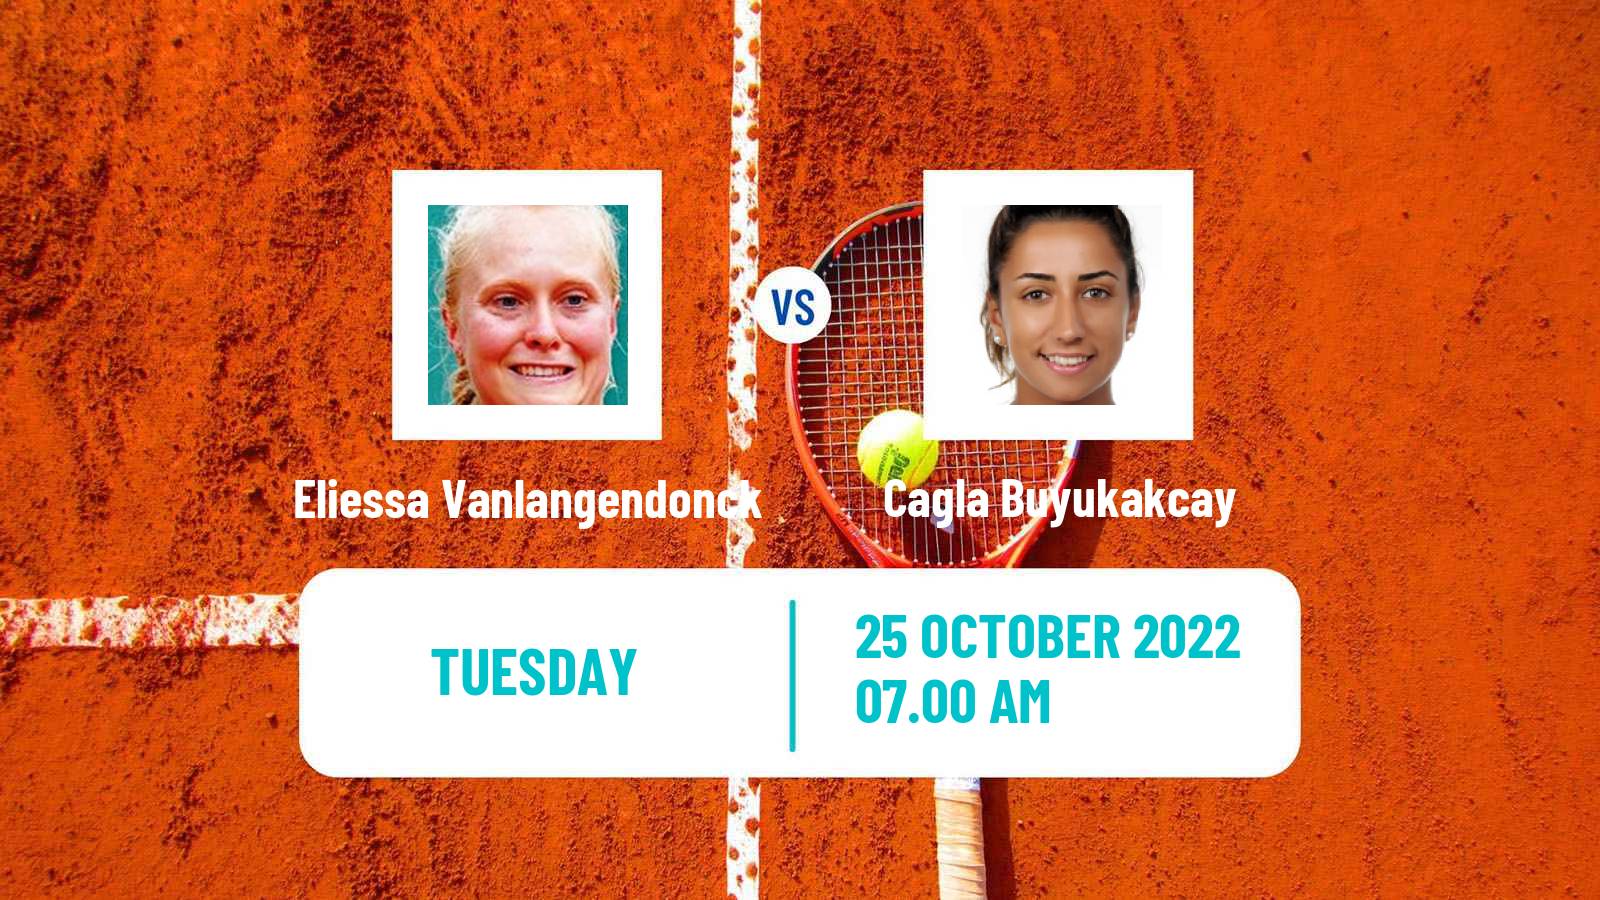 Tennis ITF Tournaments Eliessa Vanlangendonck - Cagla Buyukakcay